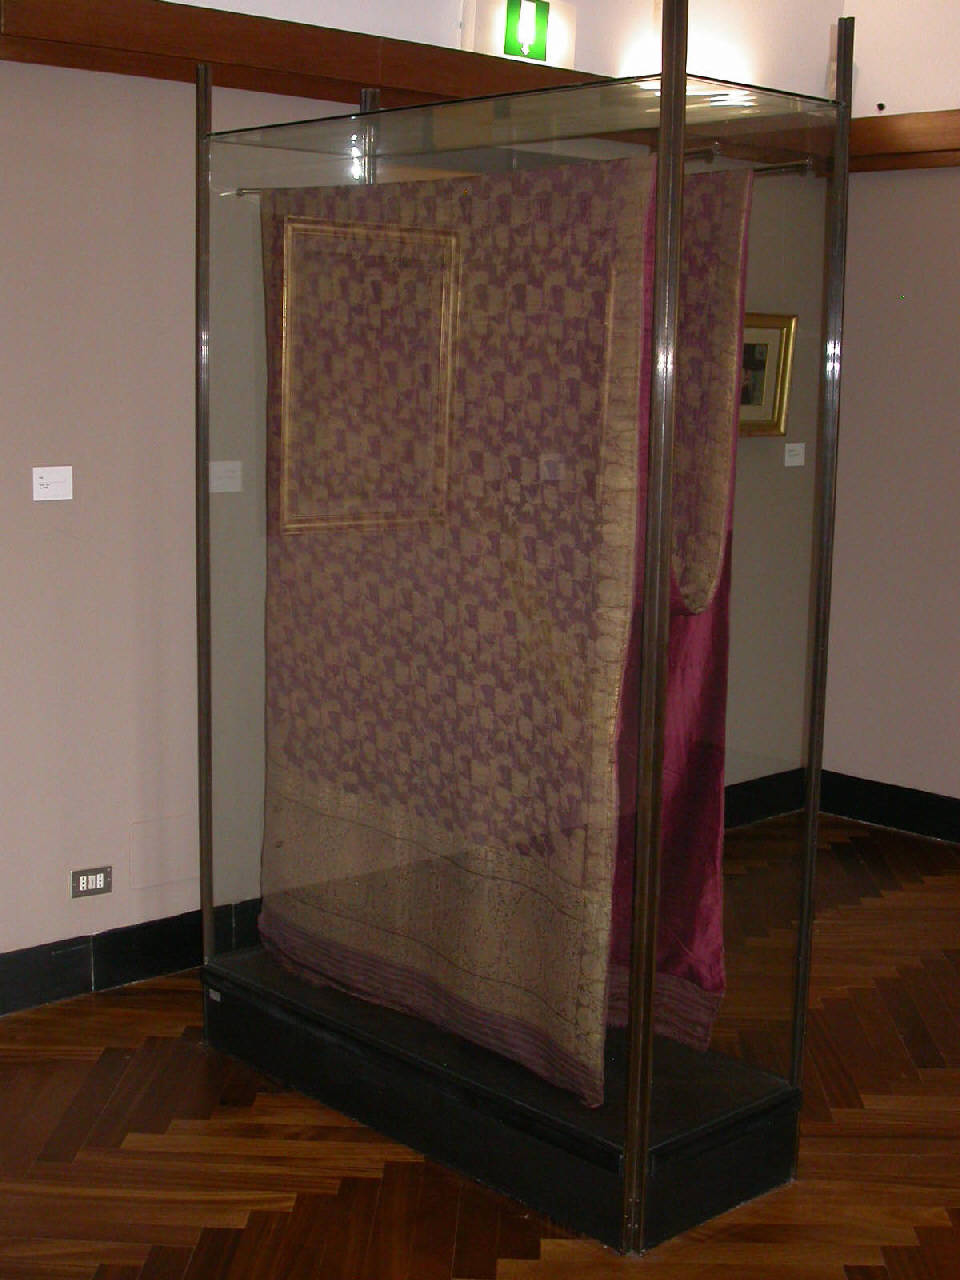 Vestito - Sari, fascia rettangolare usata come vestito - sari (fascia) - manifattura indiana (sec. XVIII)